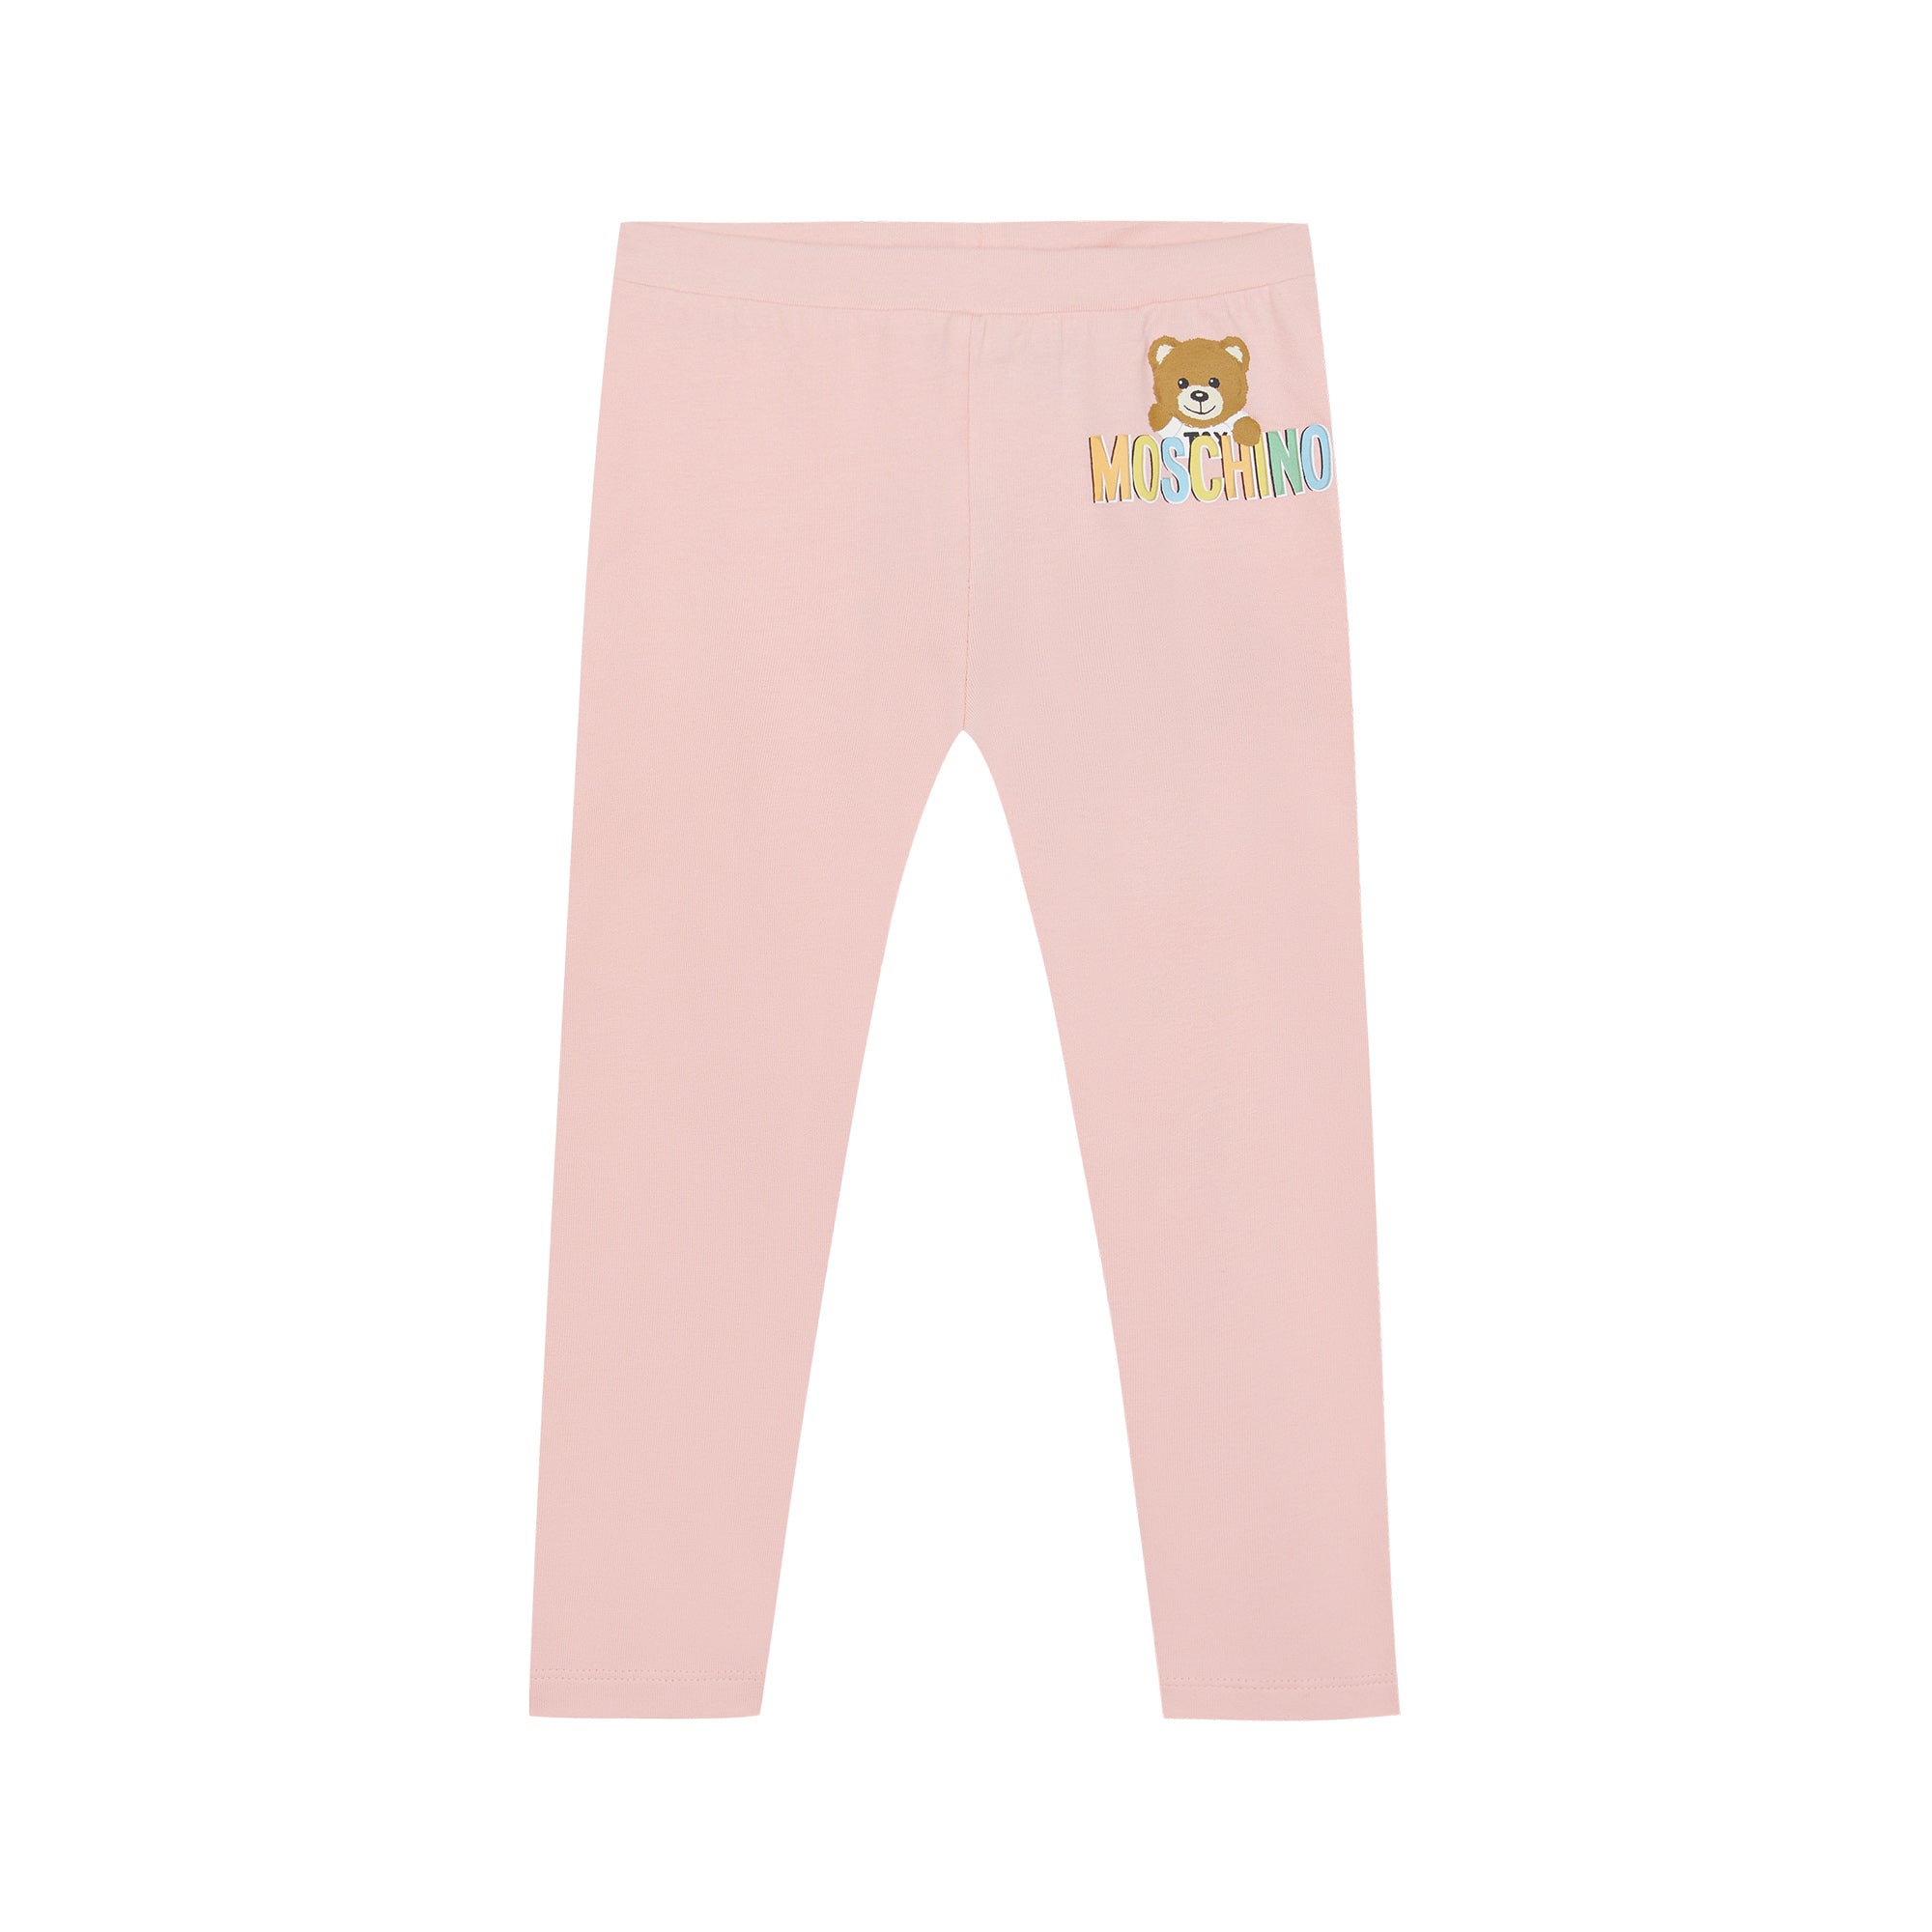 Baby Girls Pink Cotton Leggings